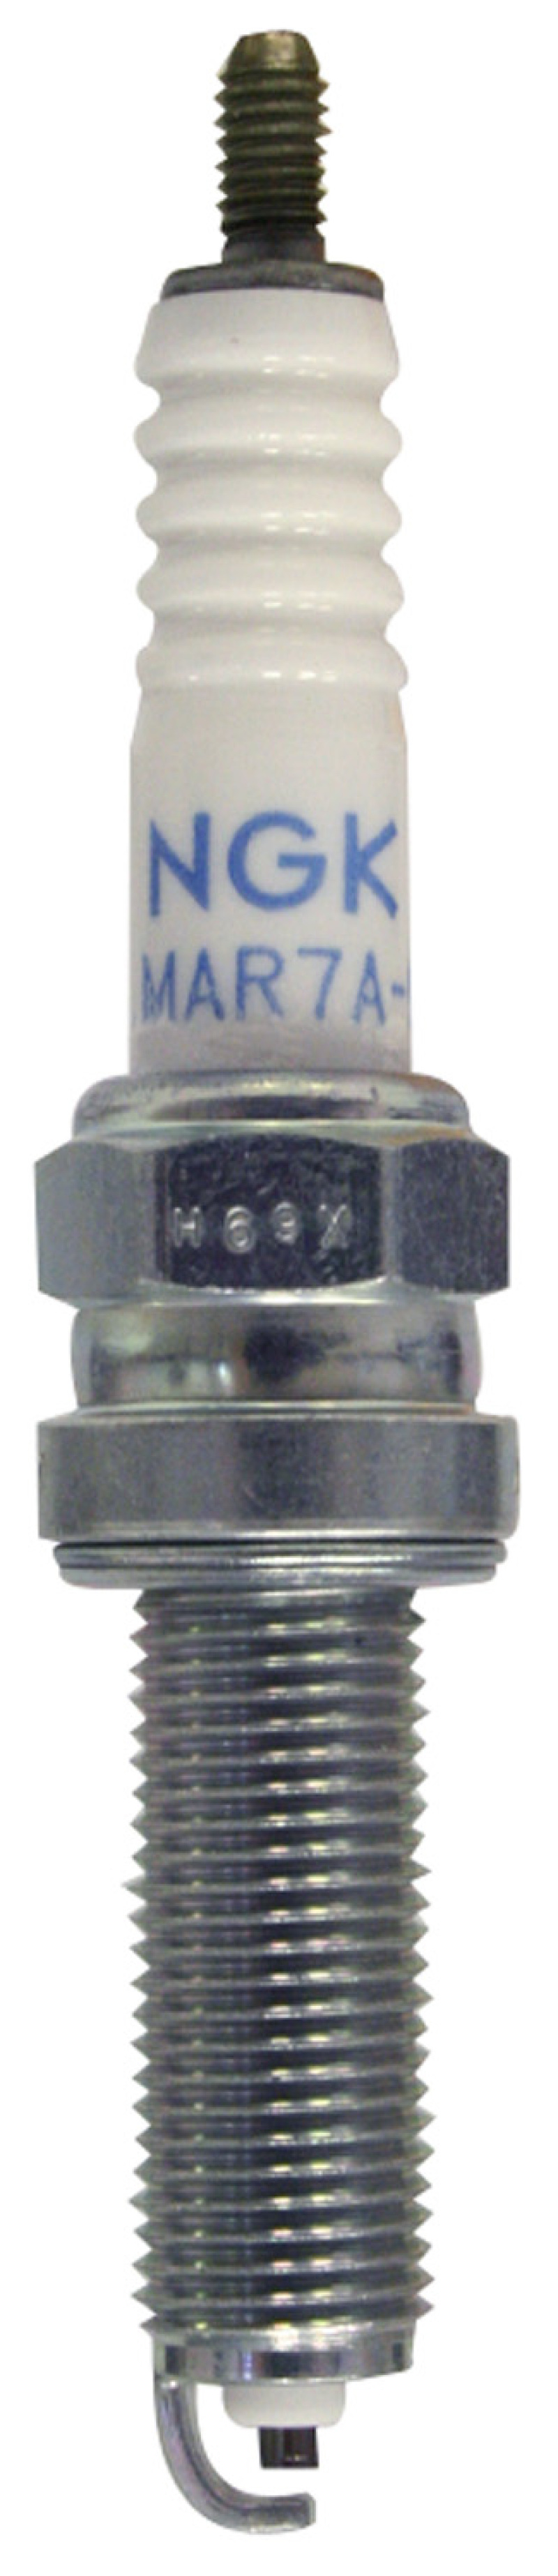 NGK Standard Spark Plug Box of 10 (LMAR6A-9) - 5946